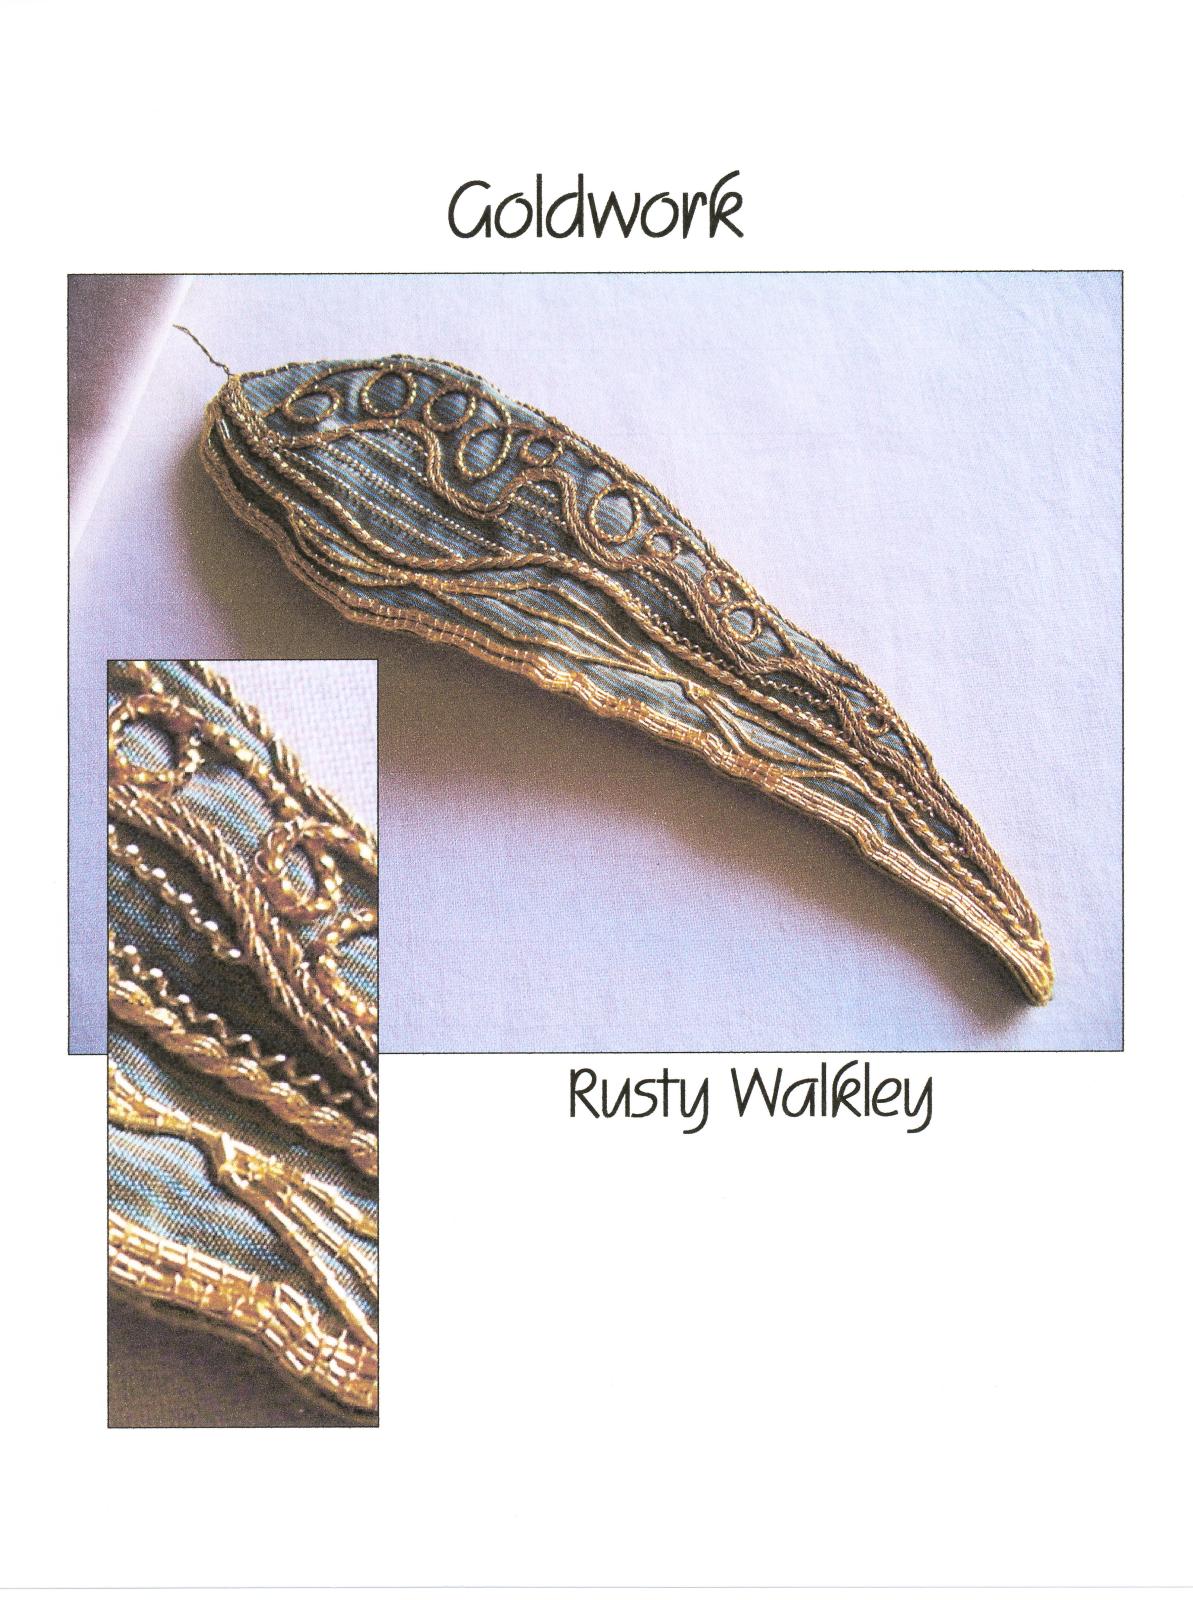 Leaf by Rusty Walkley